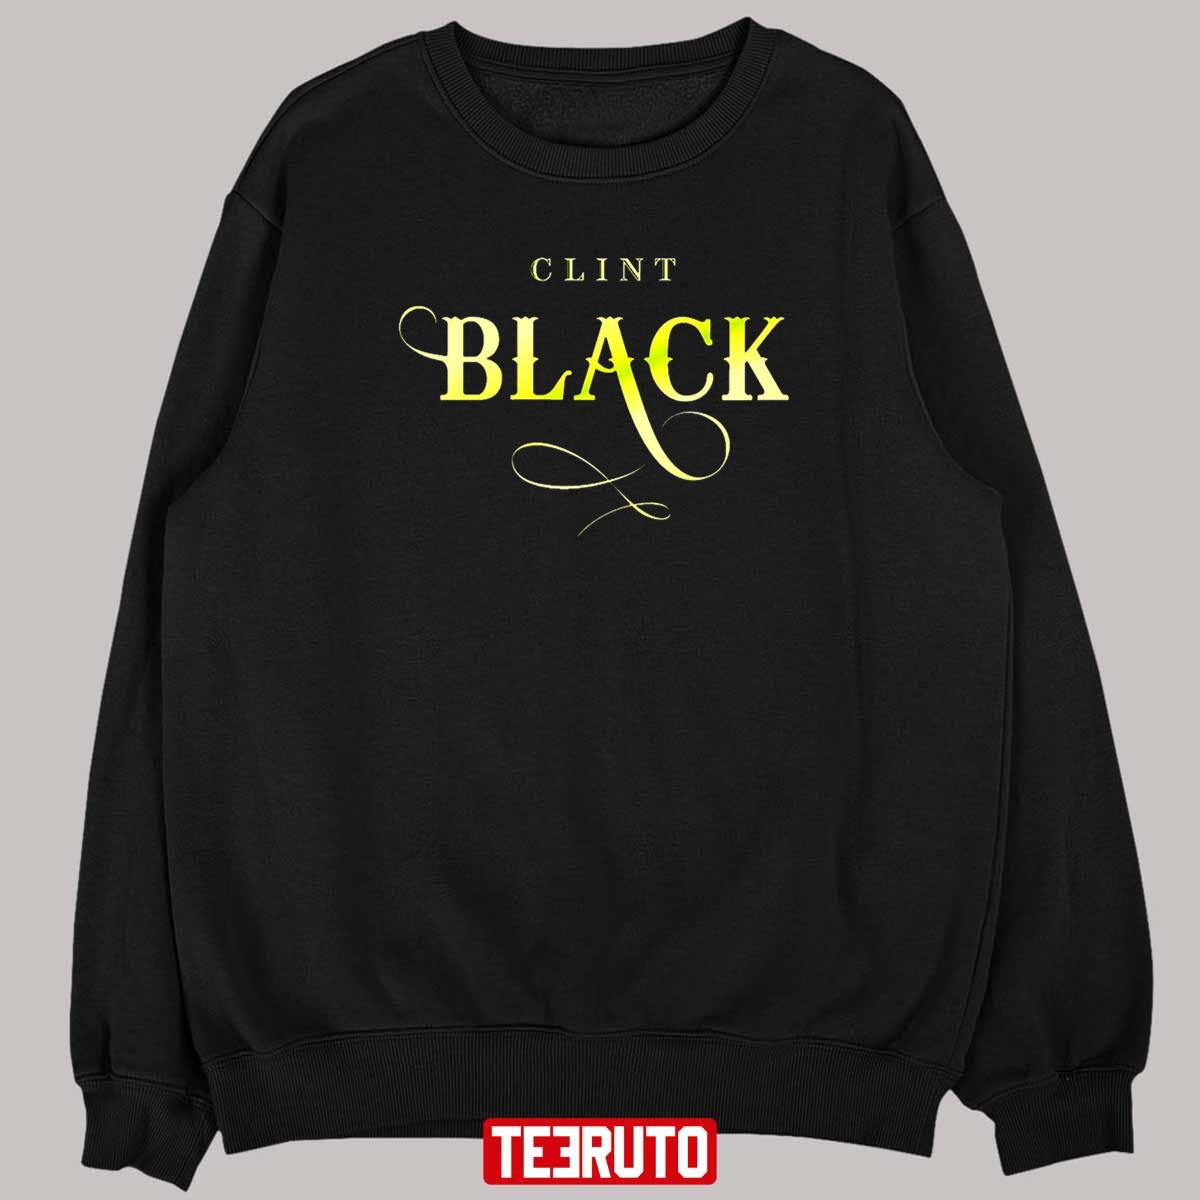 Clint Black Best Favorite Logo Graphic Unisex T-Shirt